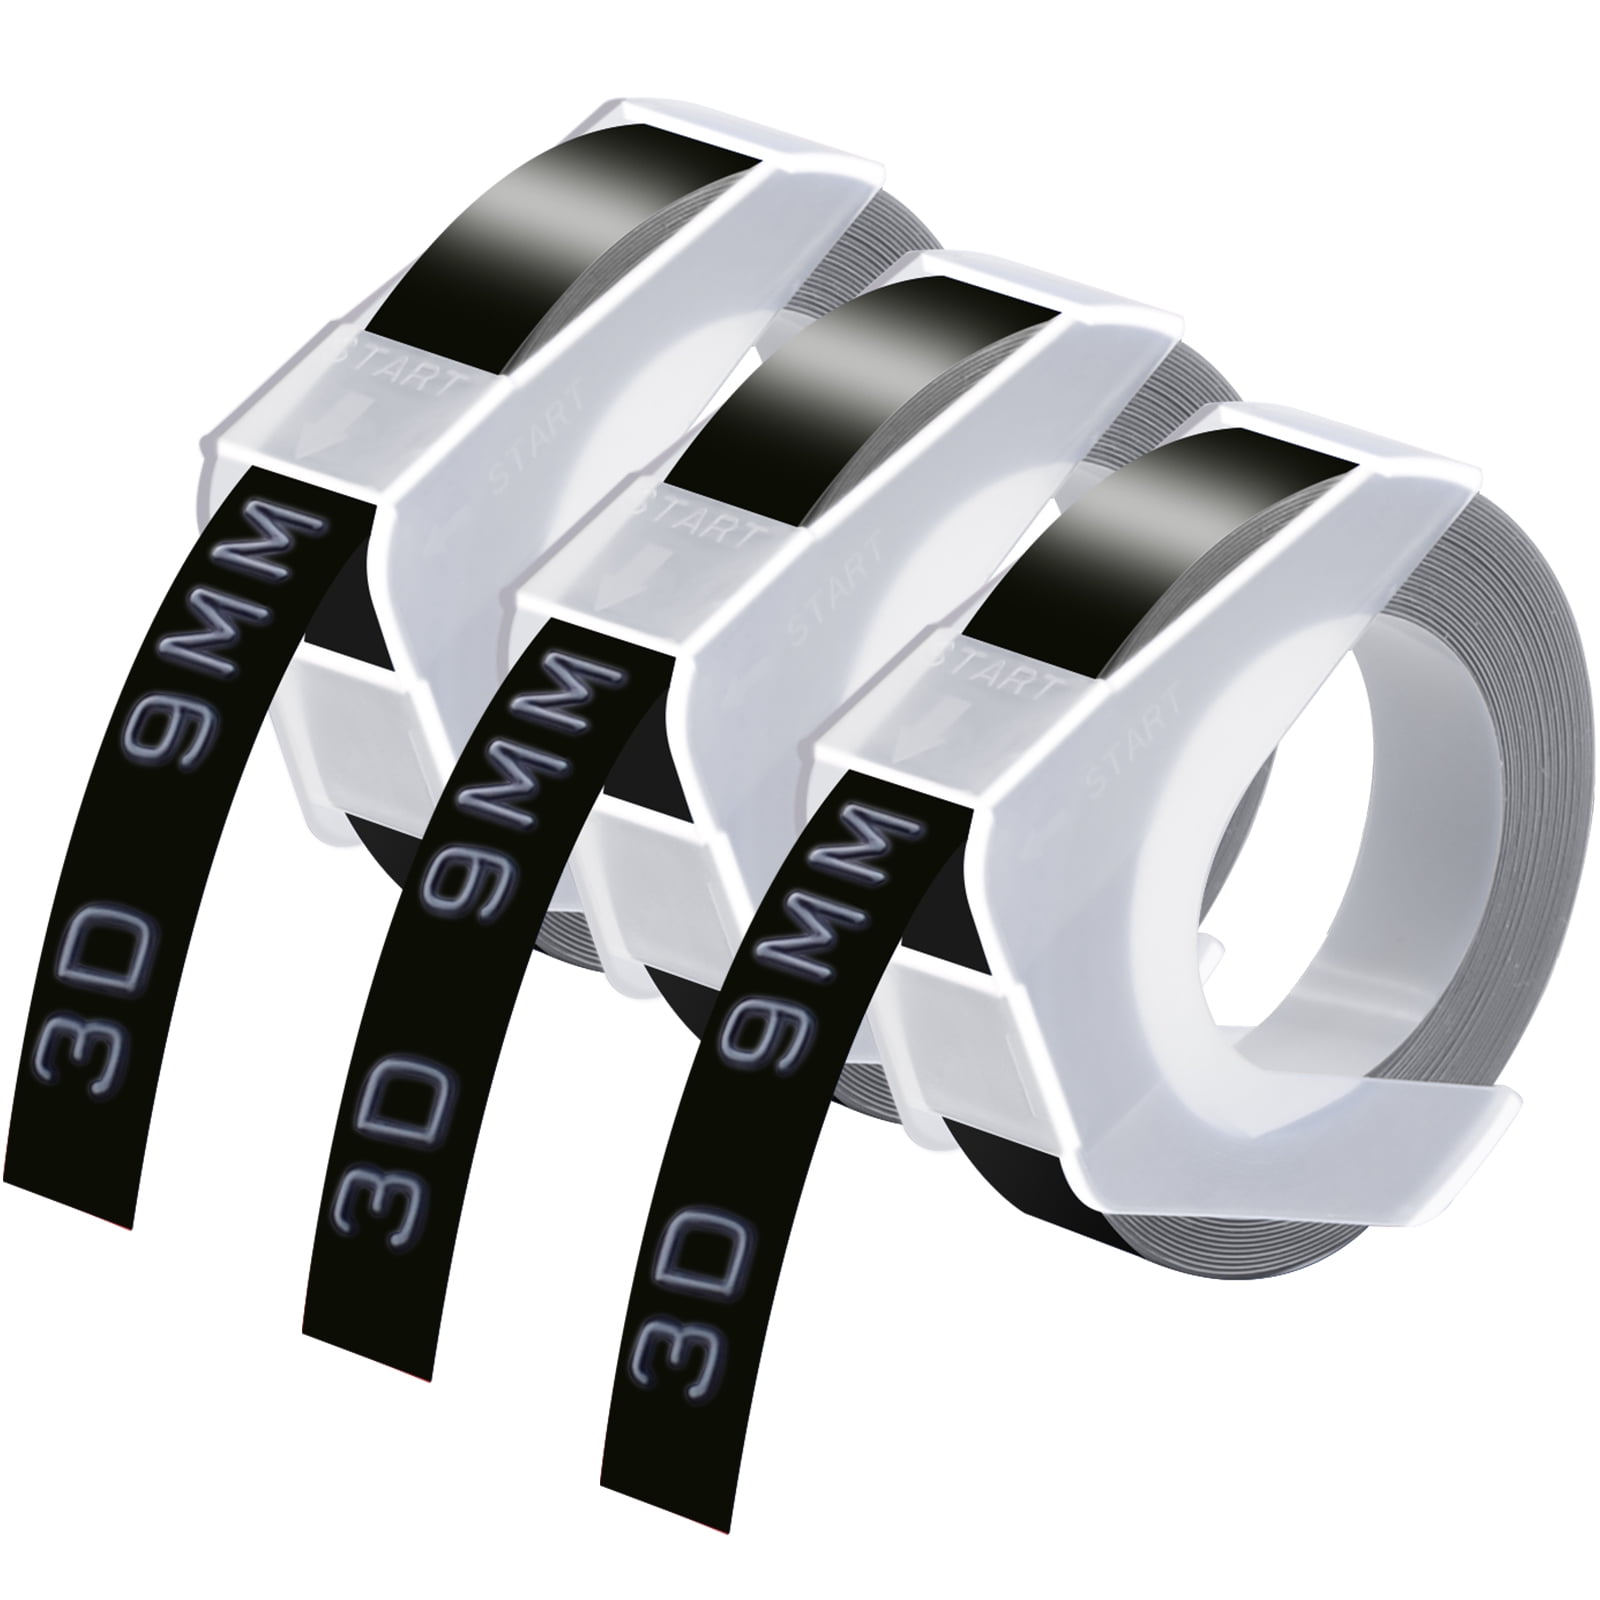 10PK For DYMO Label Maker 3D Embossing Plastic Label Tape 520109 Black 9mm 